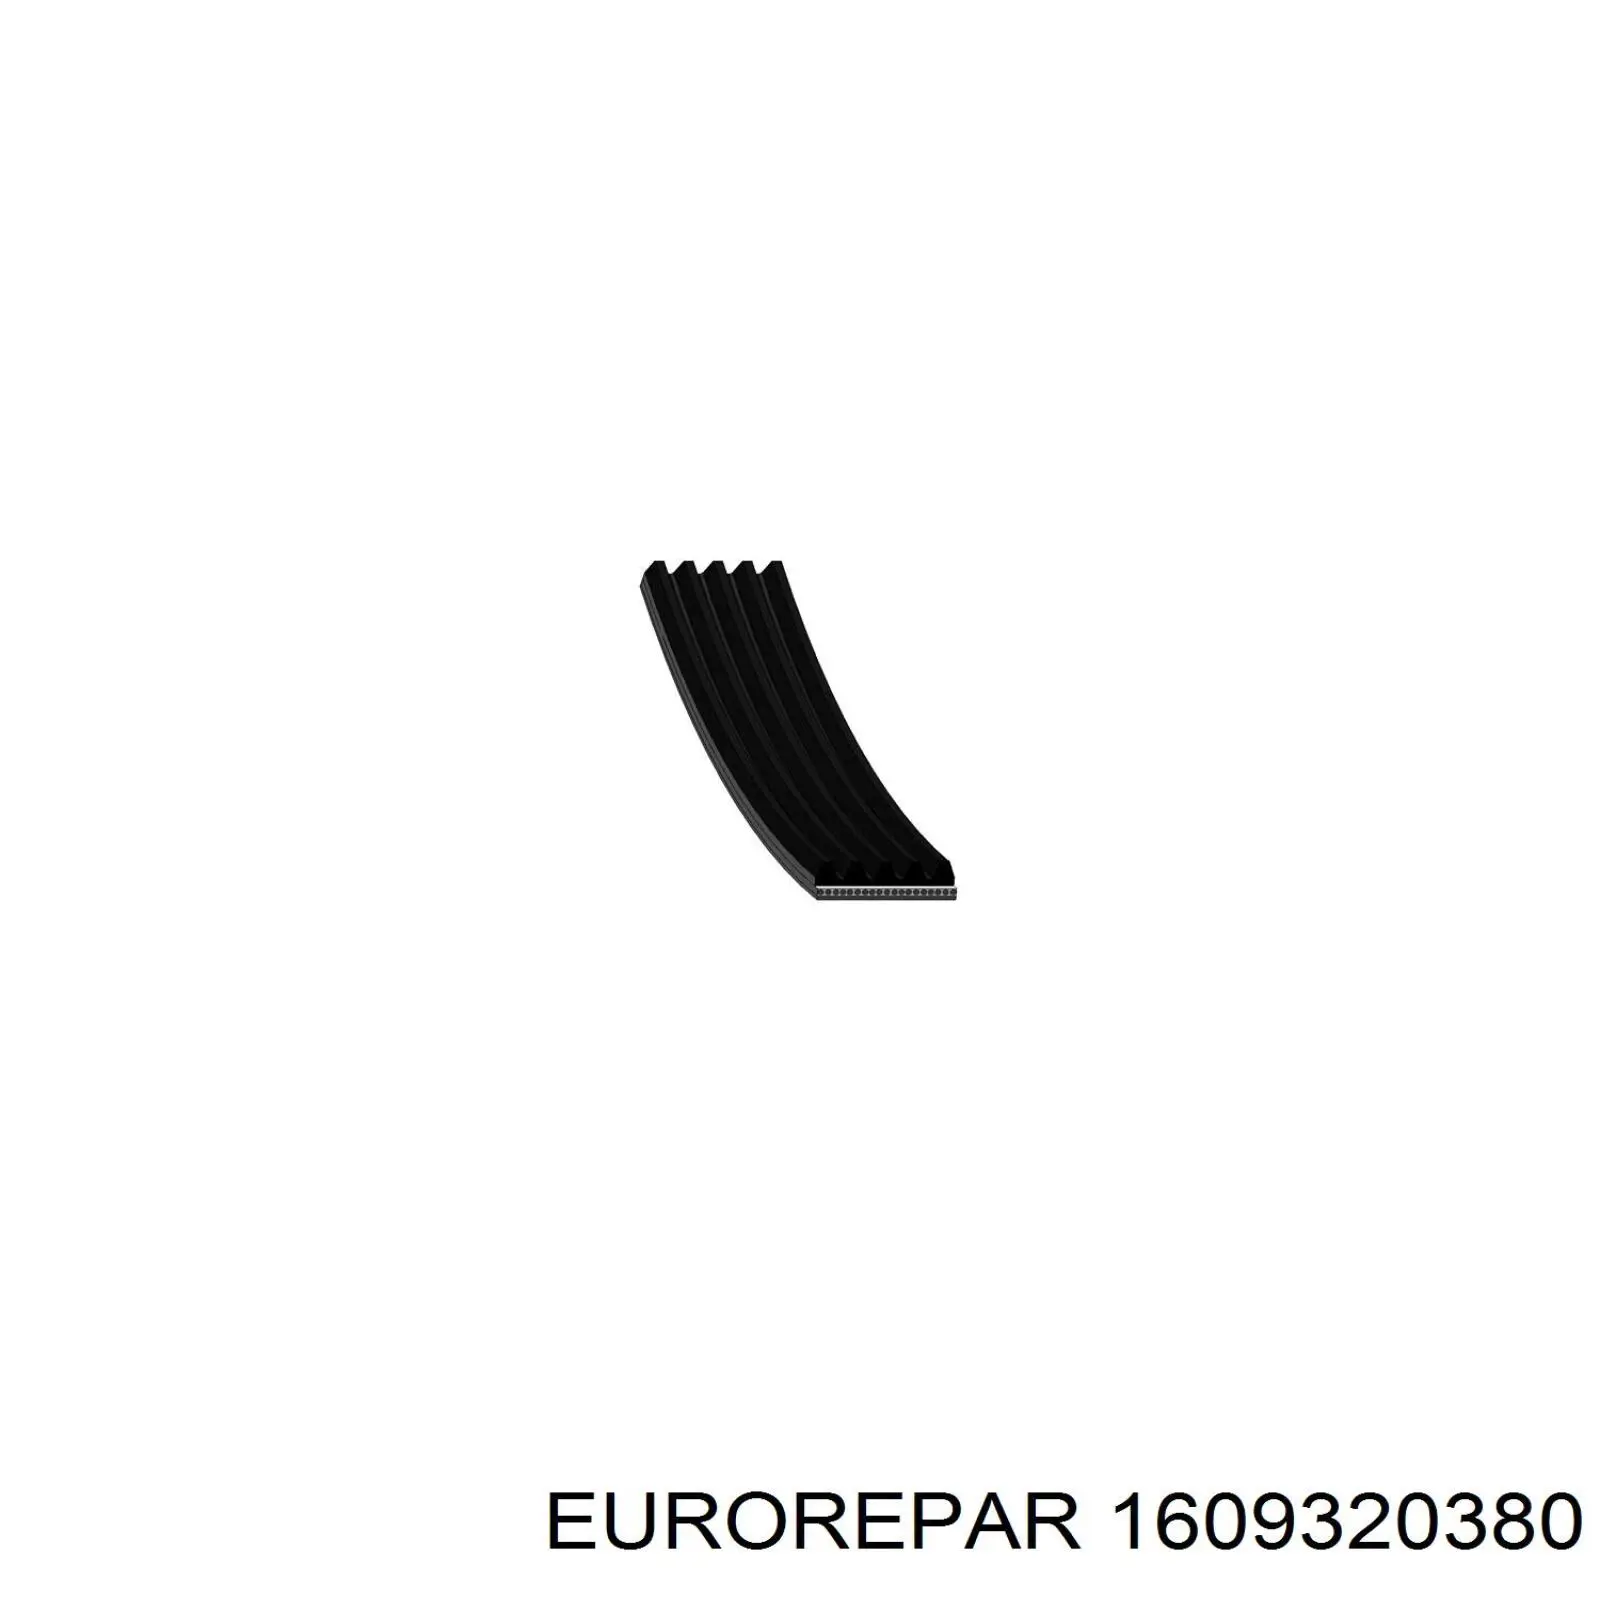 1609320380 Eurorepar correa trapezoidal